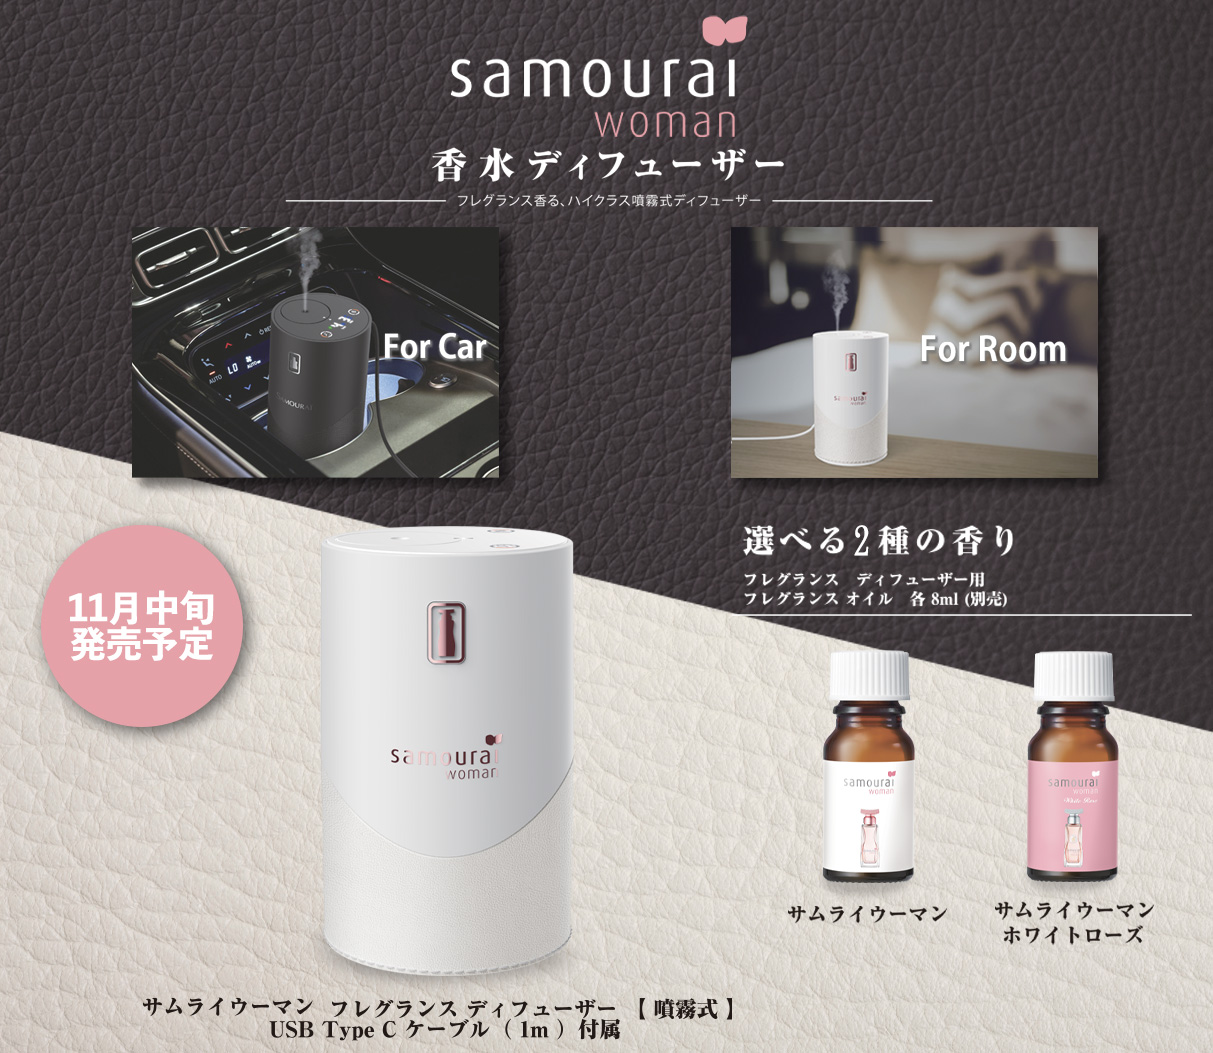 サムライウーマン | カーフレグランス ・ Samourai Woman | Car Fragrance